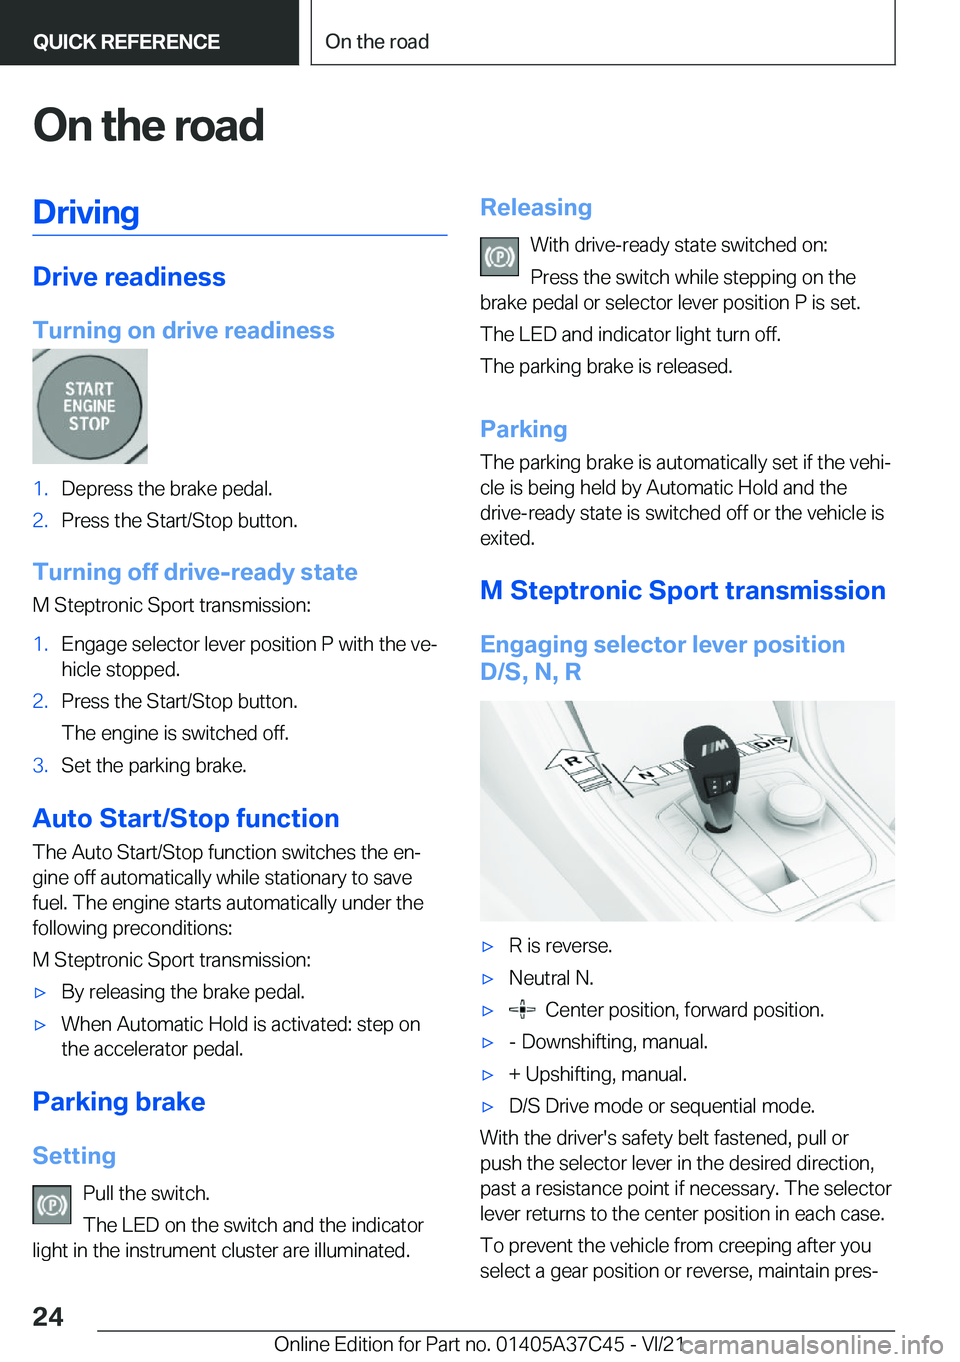 BMW X4 M 2022 Owners Manual �O�n��t�h�e��r�o�a�d�D�r�i�v�i�n�g
�D�r�i�v�e��r�e�a�d�i�n�e�s�s
�T�u�r�n�i�n�g��o�n��d�r�i�v�e��r�e�a�d�i�n�e�s�s
�1�.�D�e�p�r�e�s�s��t�h�e��b�r�a�k�e��p�e�d�a�l�.�2�.�P�r�e�s�s��t�h�e��S�